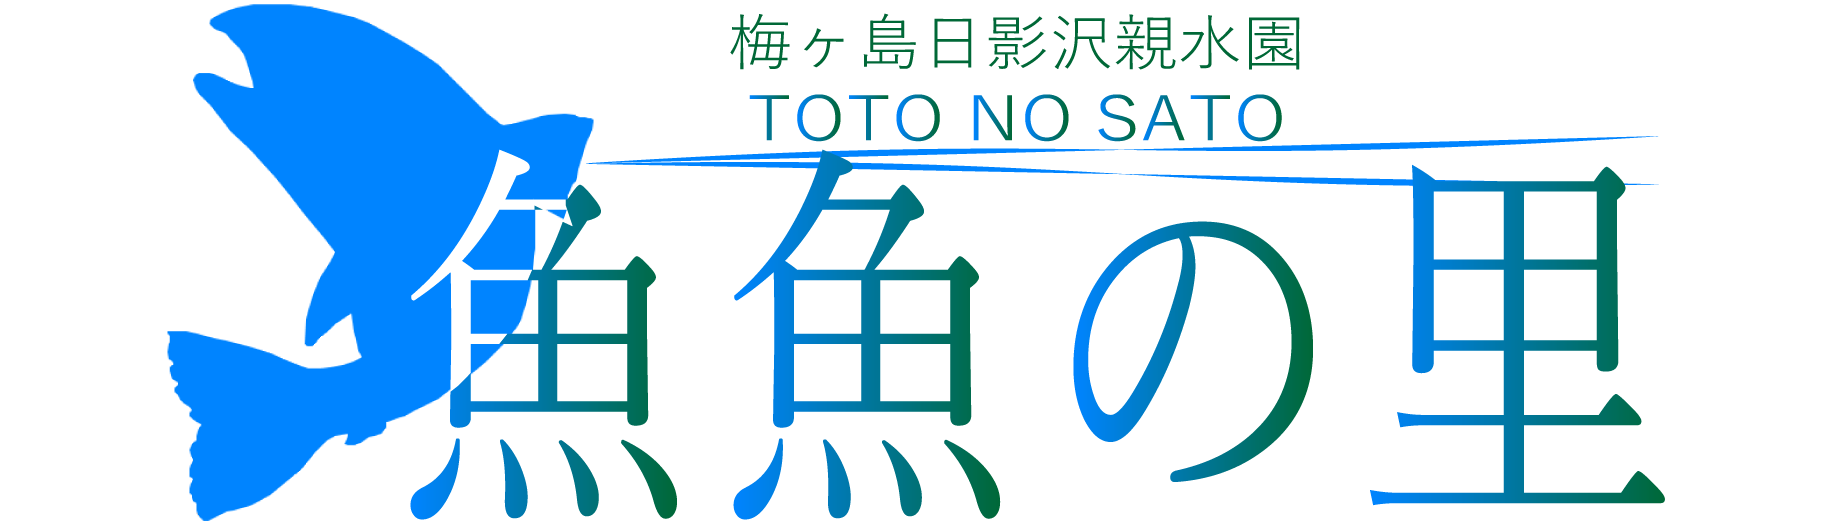 日影沢親水園 魚魚の里 Toto No Sato